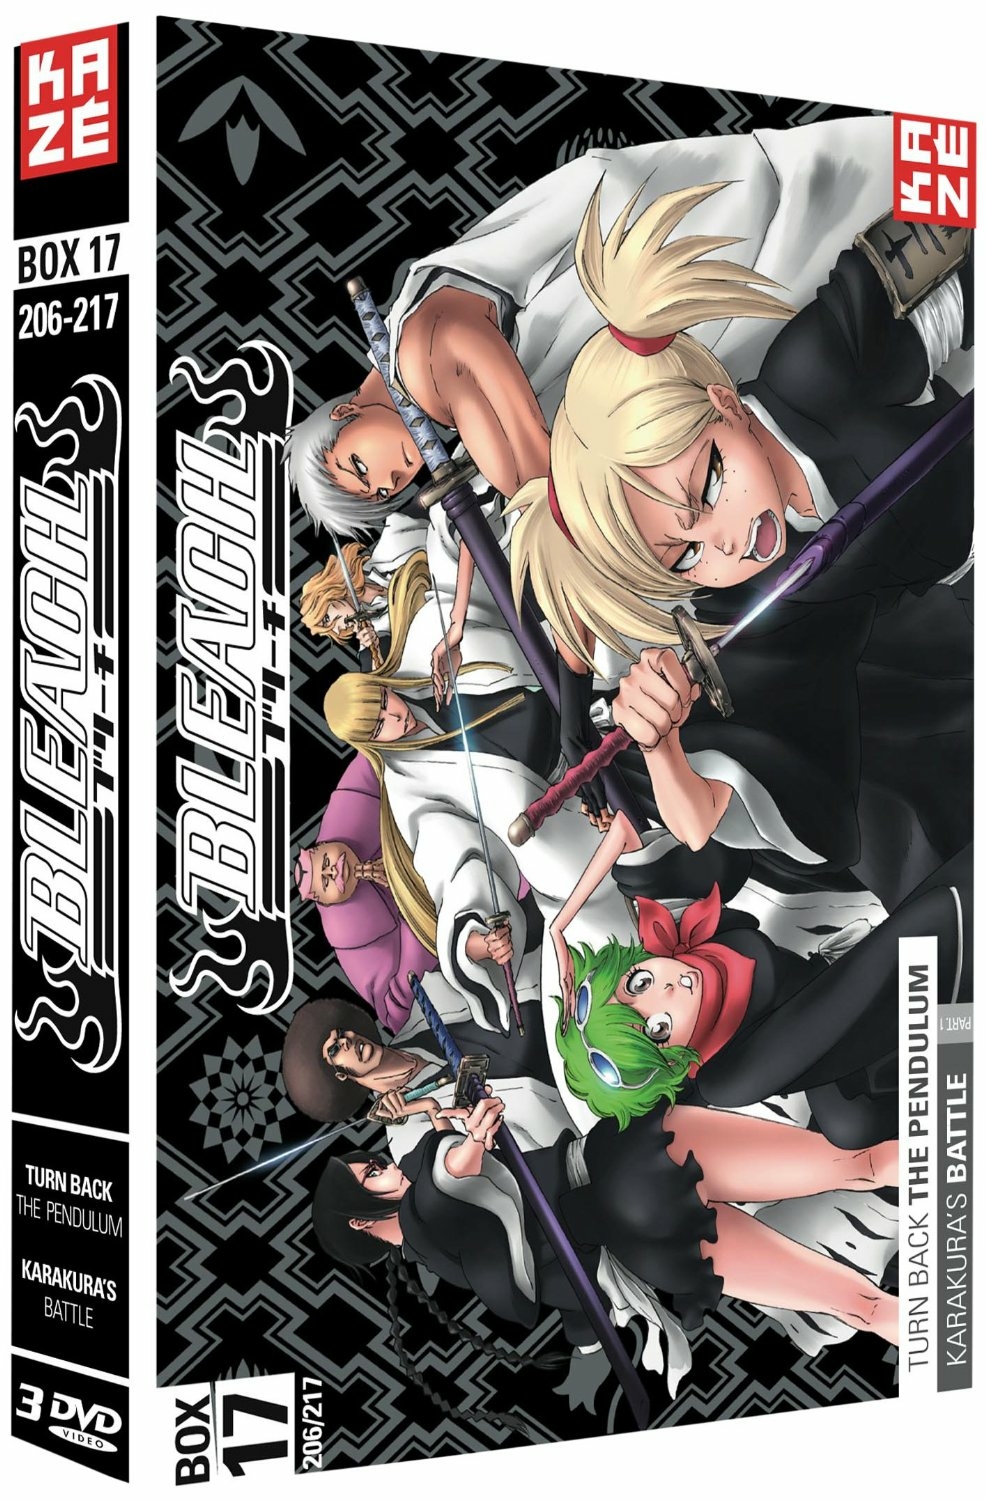 BLEACH 20 THE Bount DVD Episodes 80 81 82 83 Region4 PAL Anime English  Subtitles $10.00 - PicClick AU